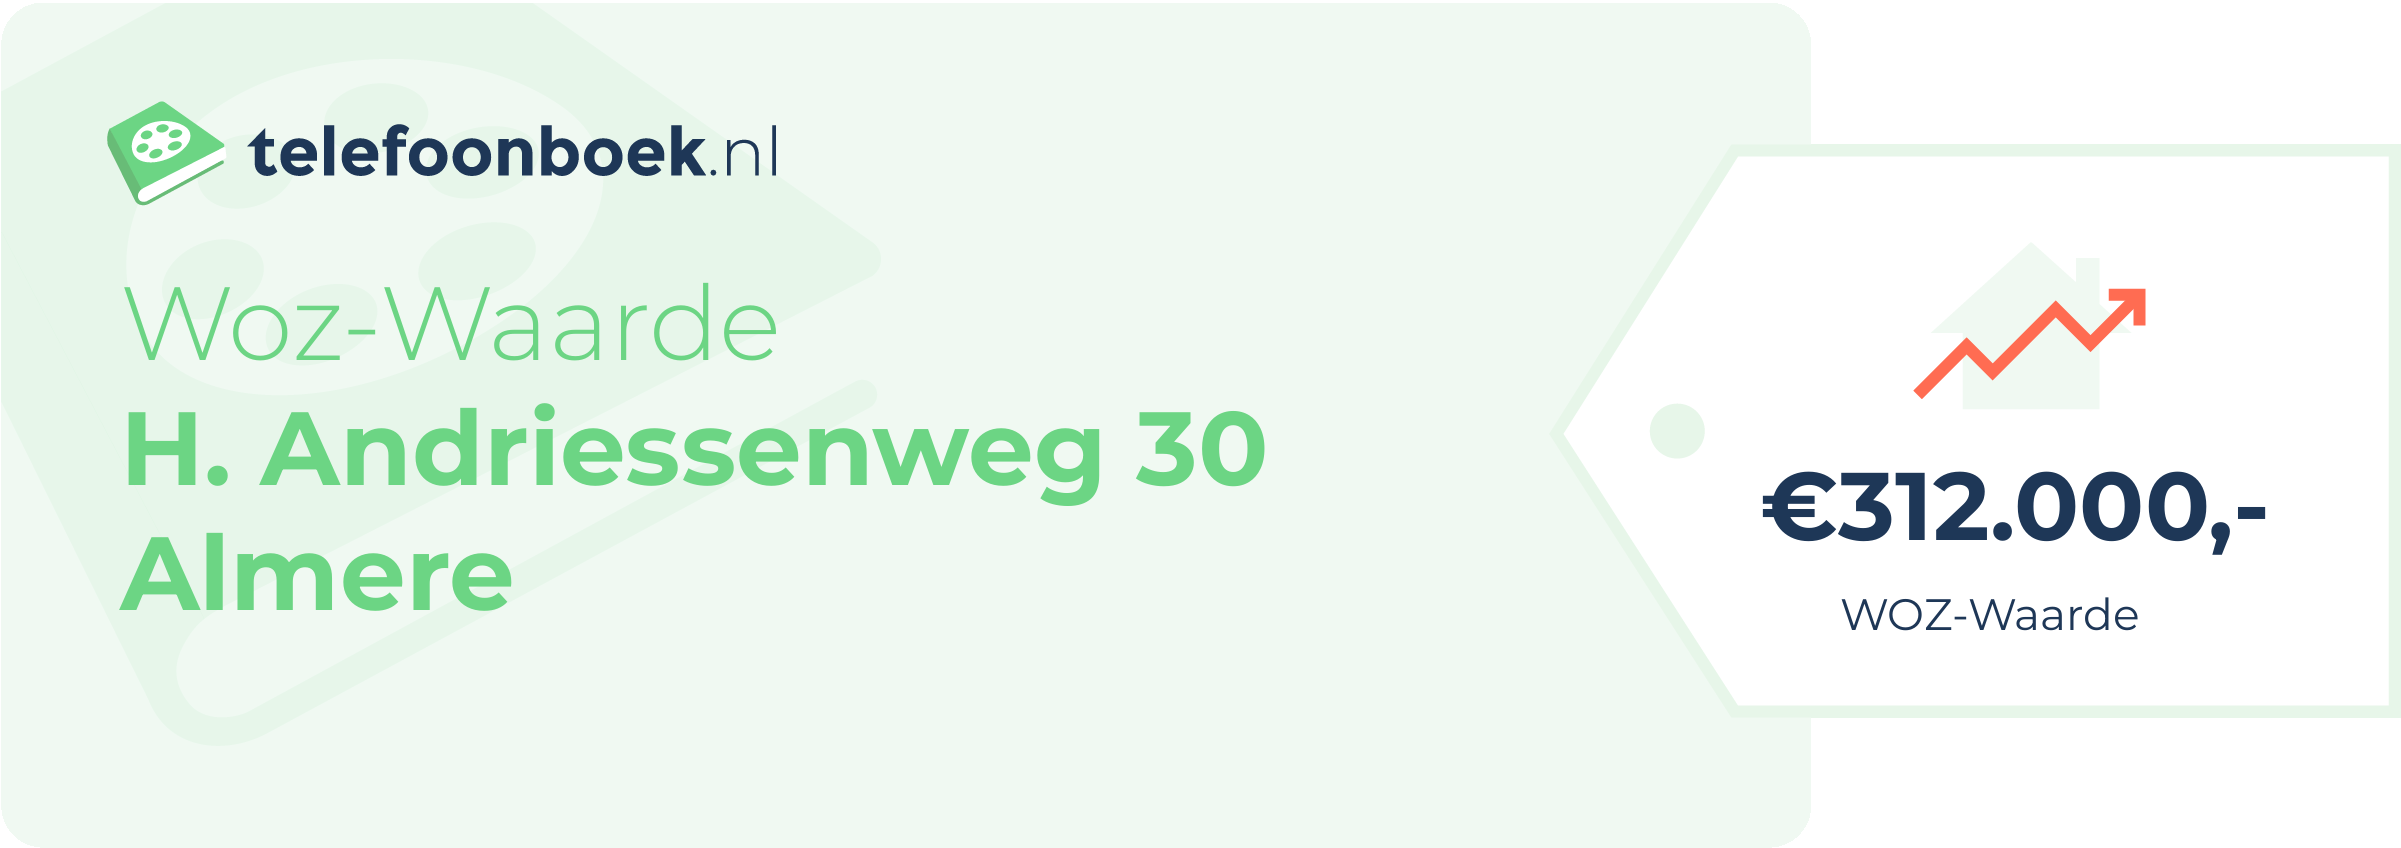 WOZ-waarde H. Andriessenweg 30 Almere